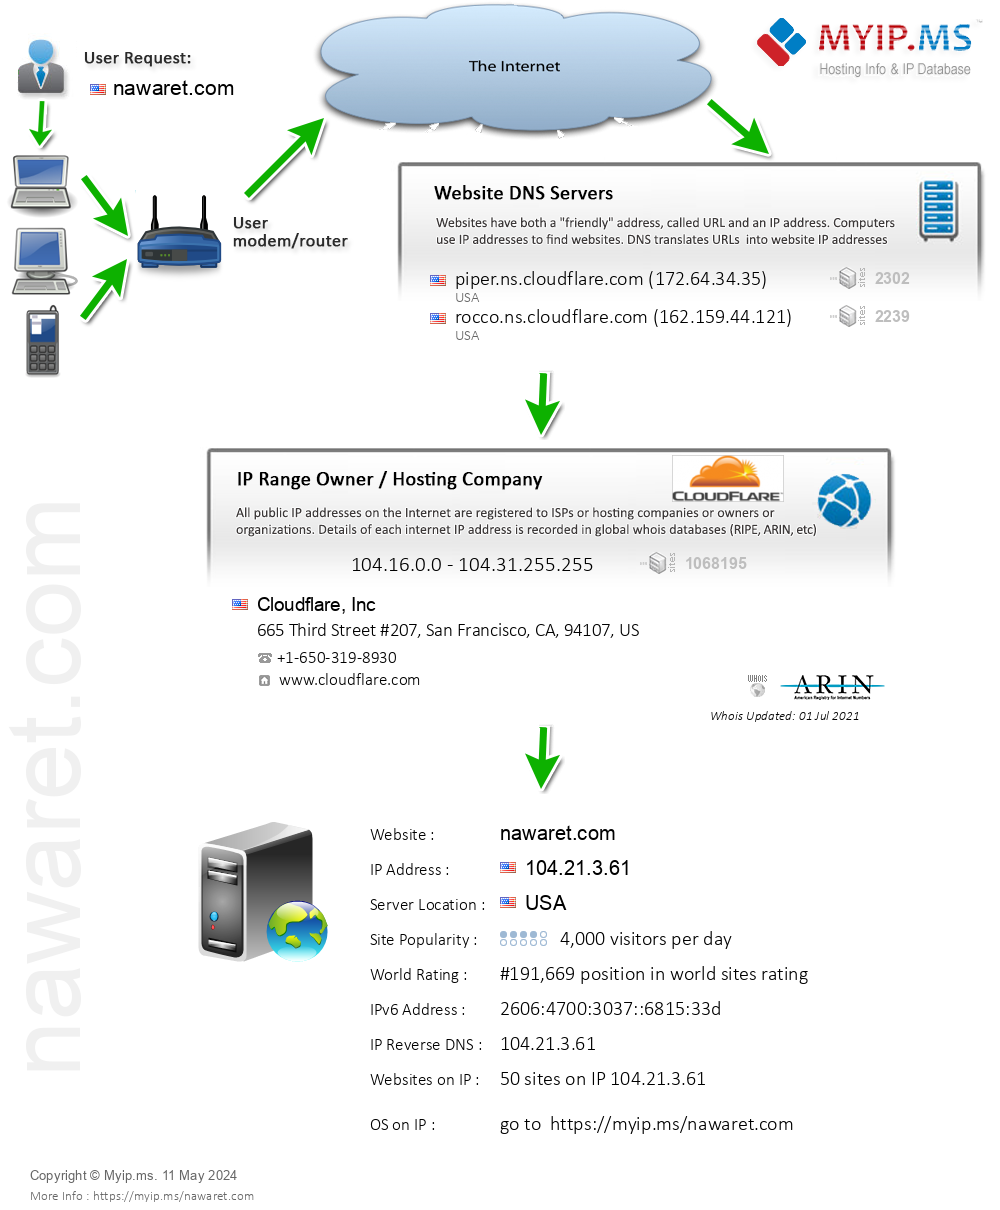 Nawaret.com - Website Hosting Visual IP Diagram